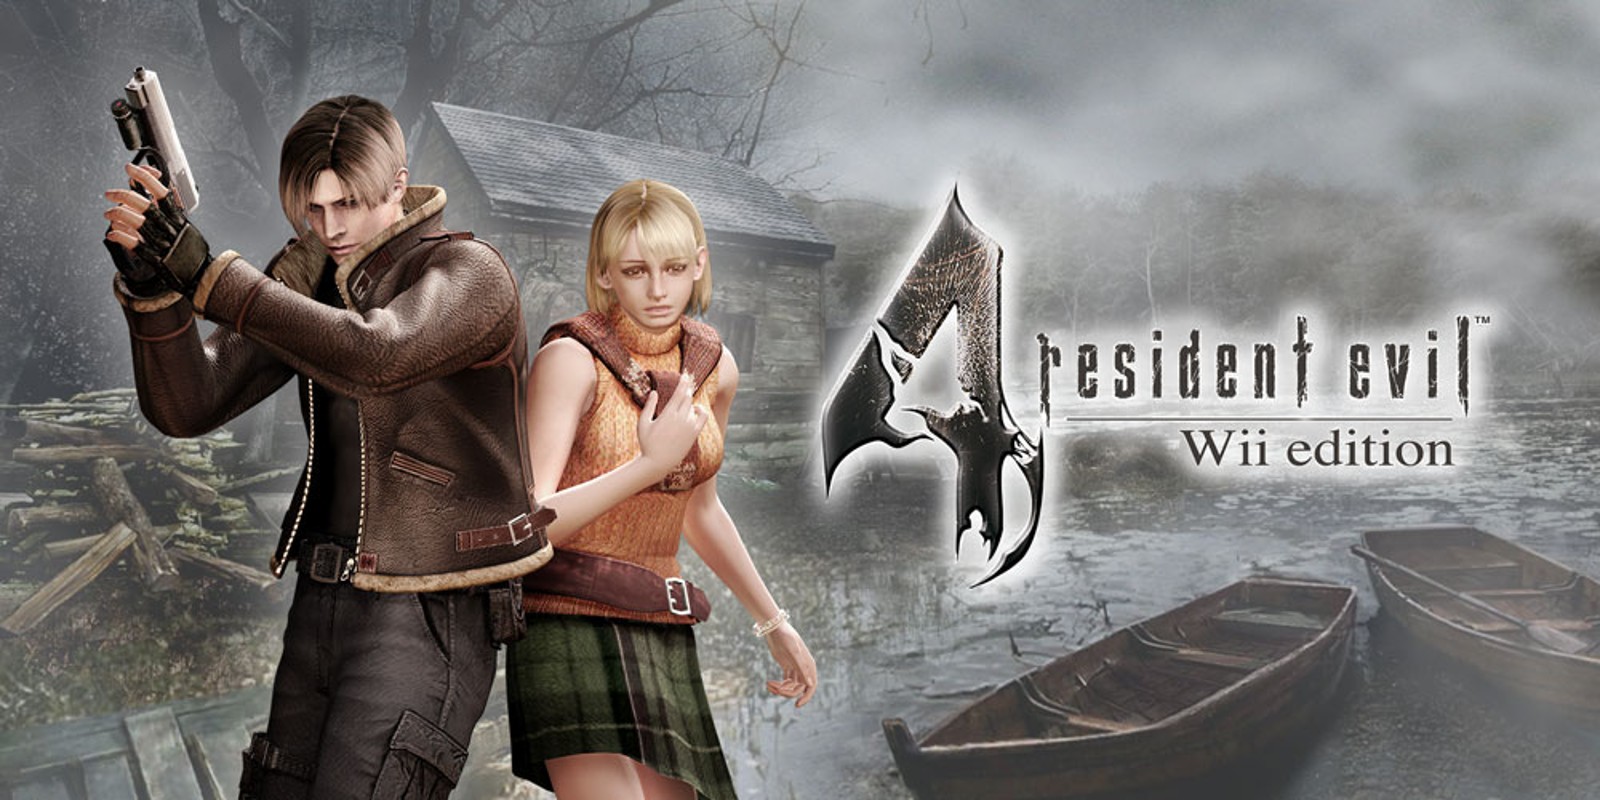 Прохождение игры Resident Evil 4 - Ultimate HD Edition # 17 (Русская версия игры) PC - Ver. HD Full.